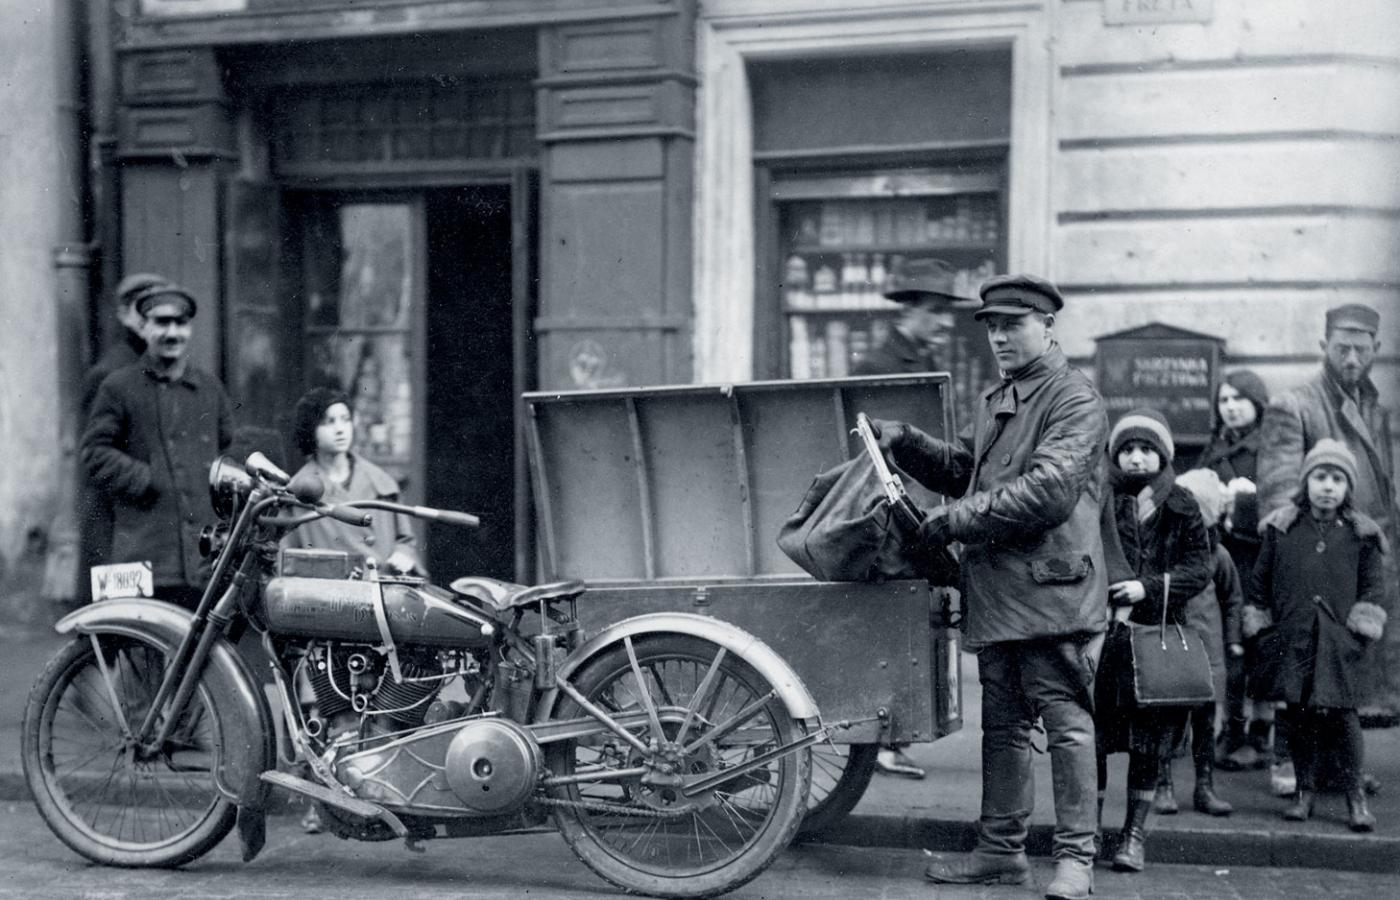 Skrzynia pocztowa na motocyklu Harley Davidson. Luty 1926 r.